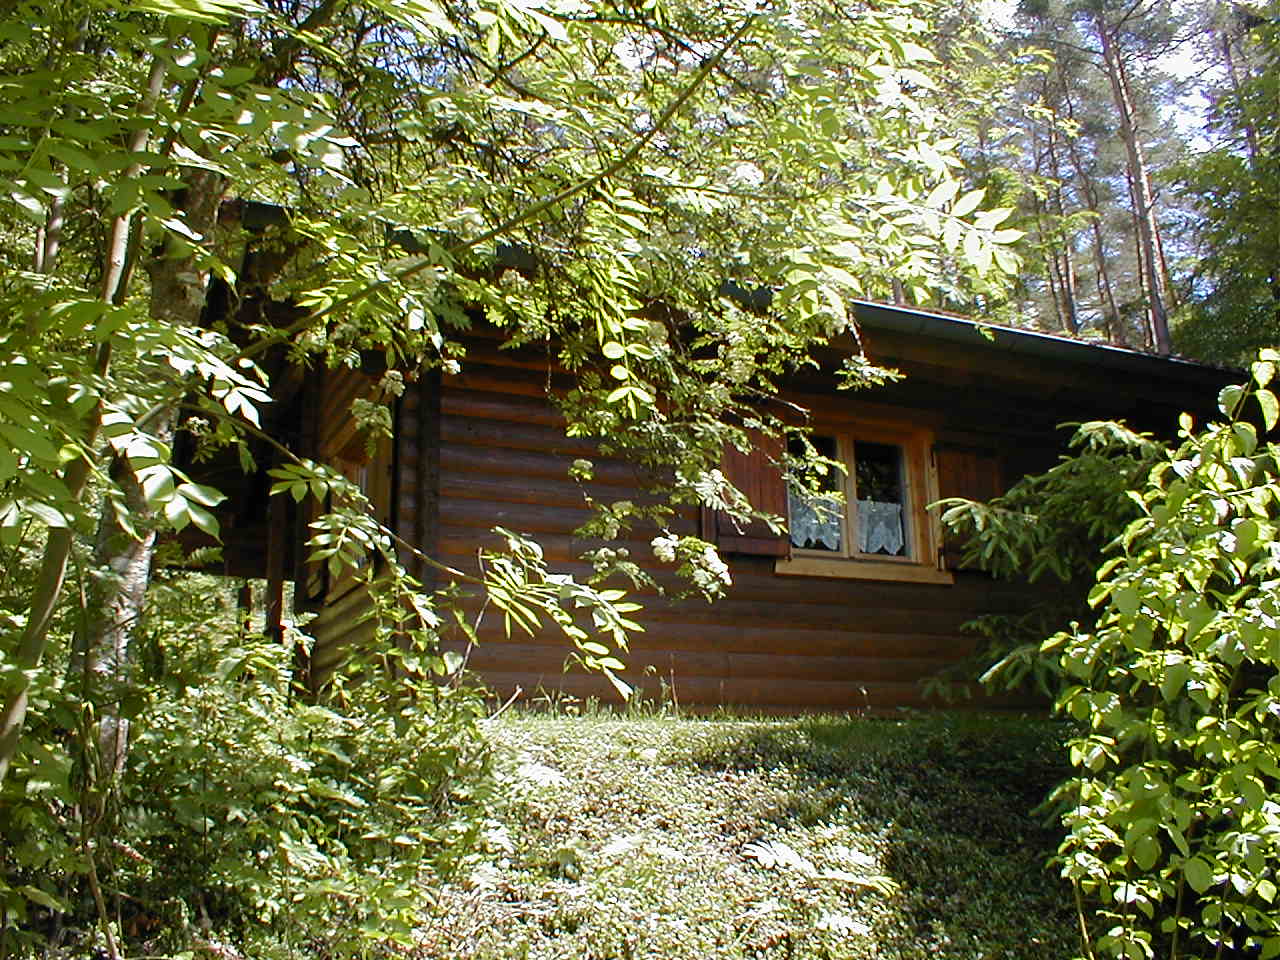 Das Haus vom Wald her gesehen, Wohn-, Schlaf- + Kinderzimmer Ferienhaus 8 / Blockhaus in Stamsried / Bayerischer Wald